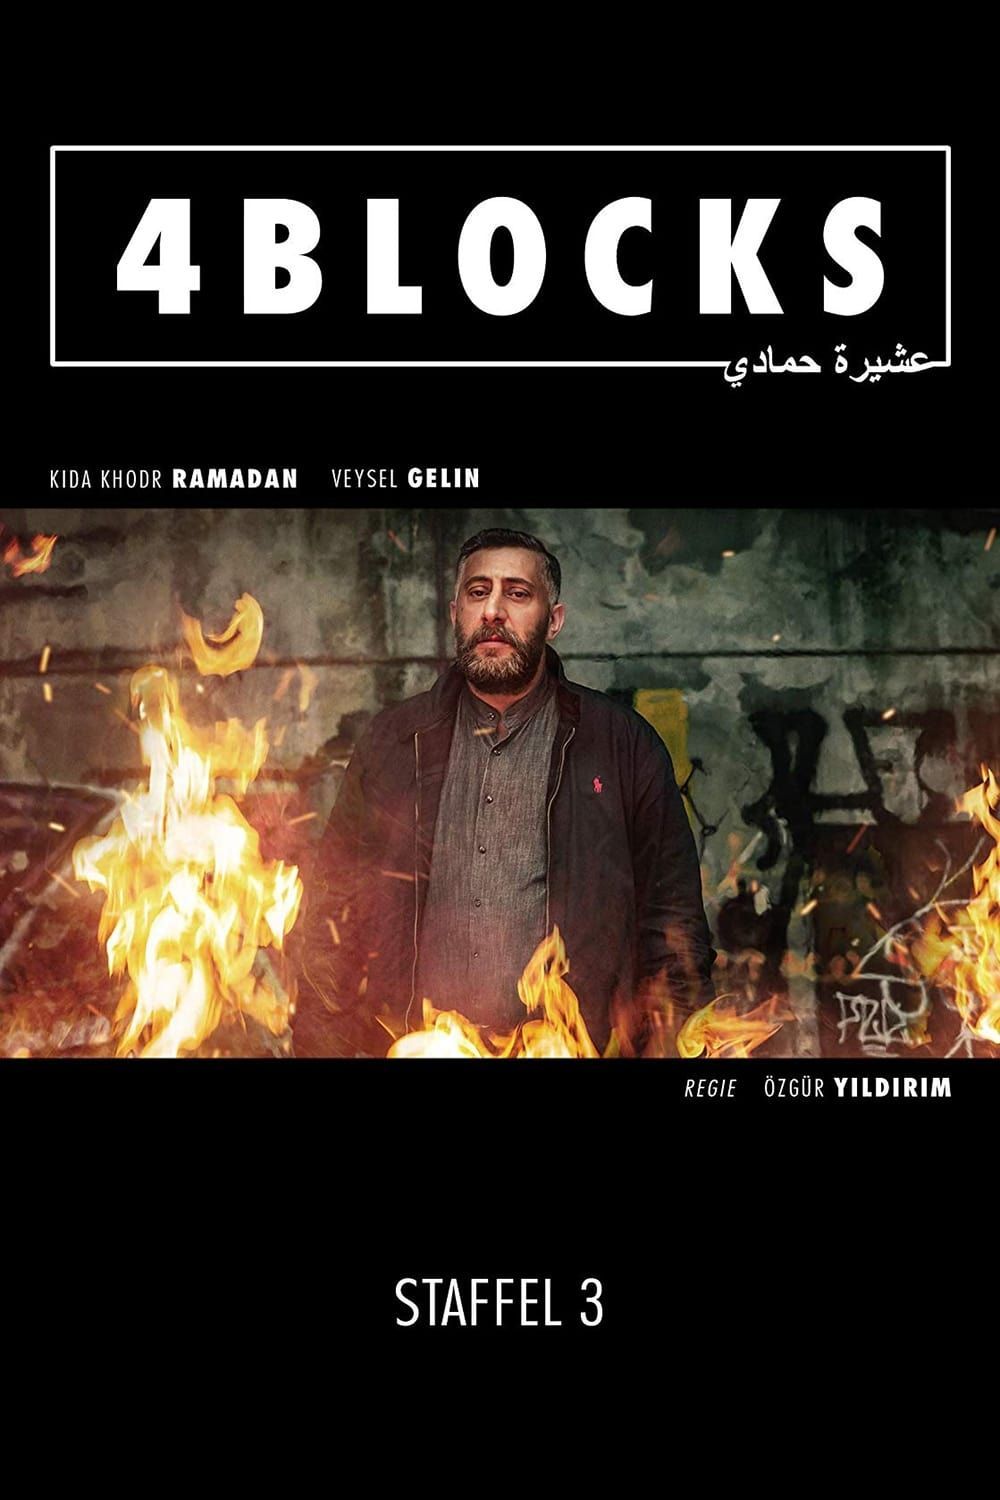 Watch 4 Blocks (2017) TV Series Online - Plex